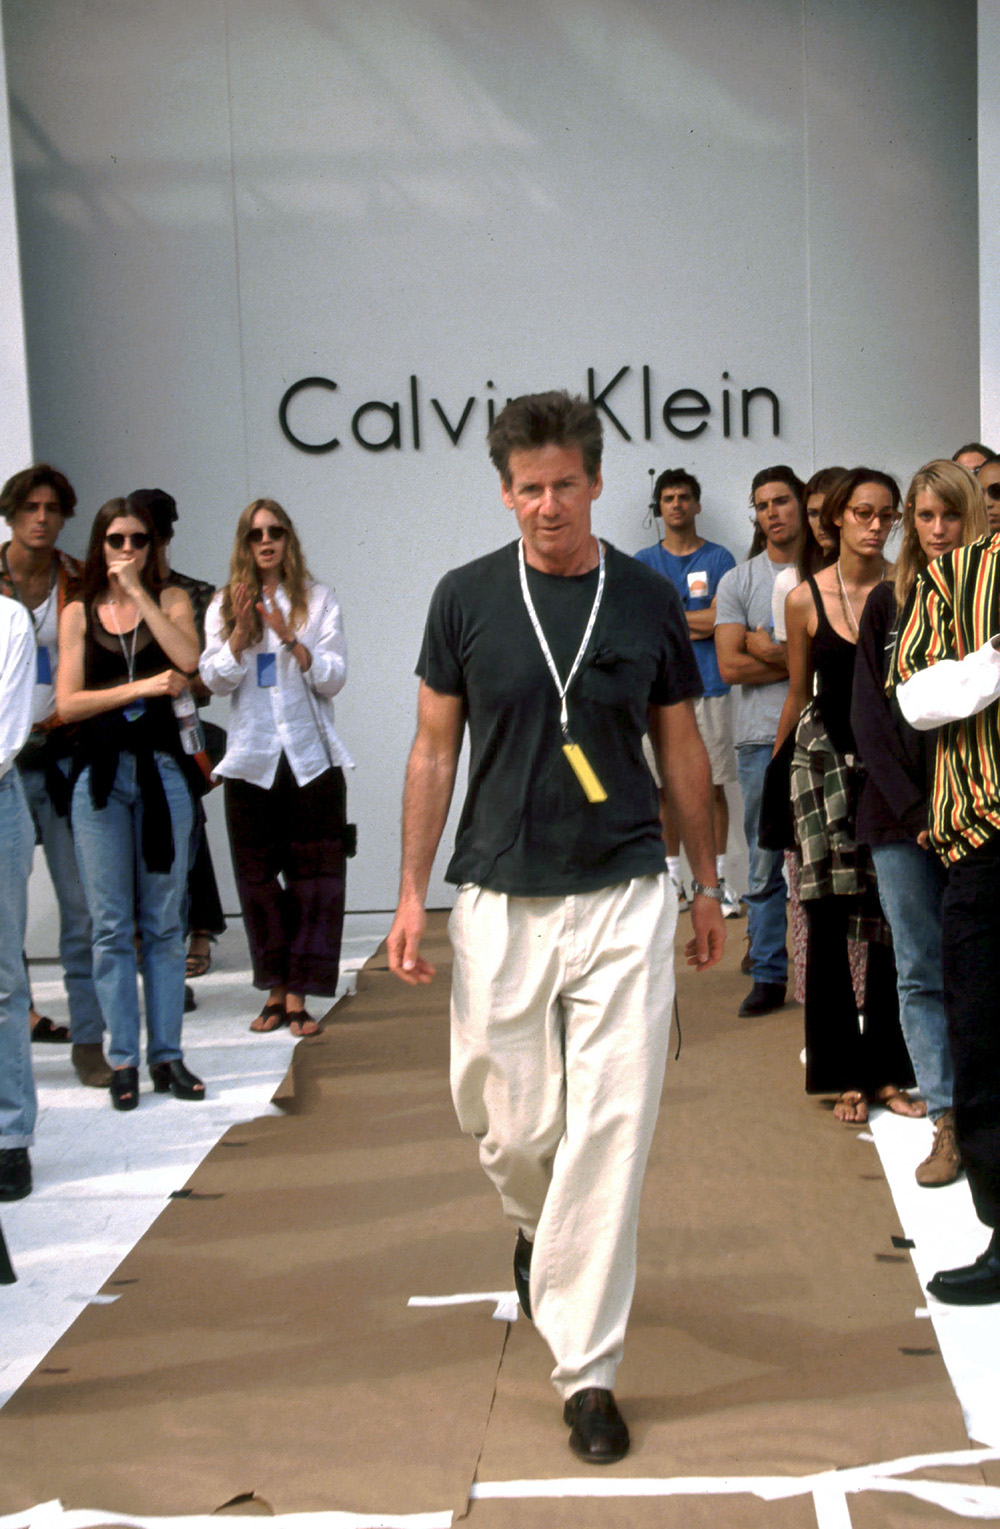 Calvin Klein Photos Through the Years